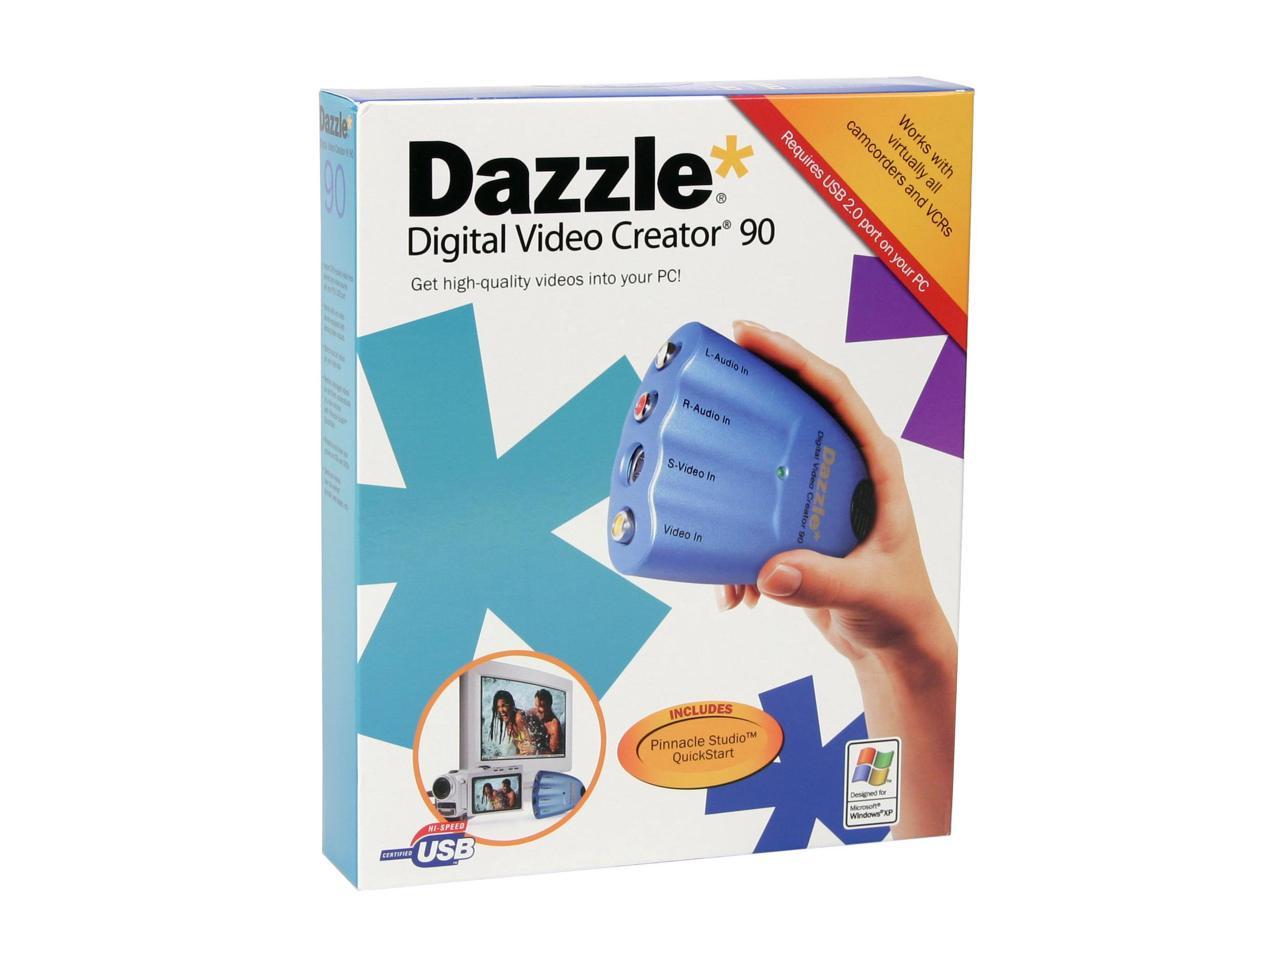 dazzle not capturing audio